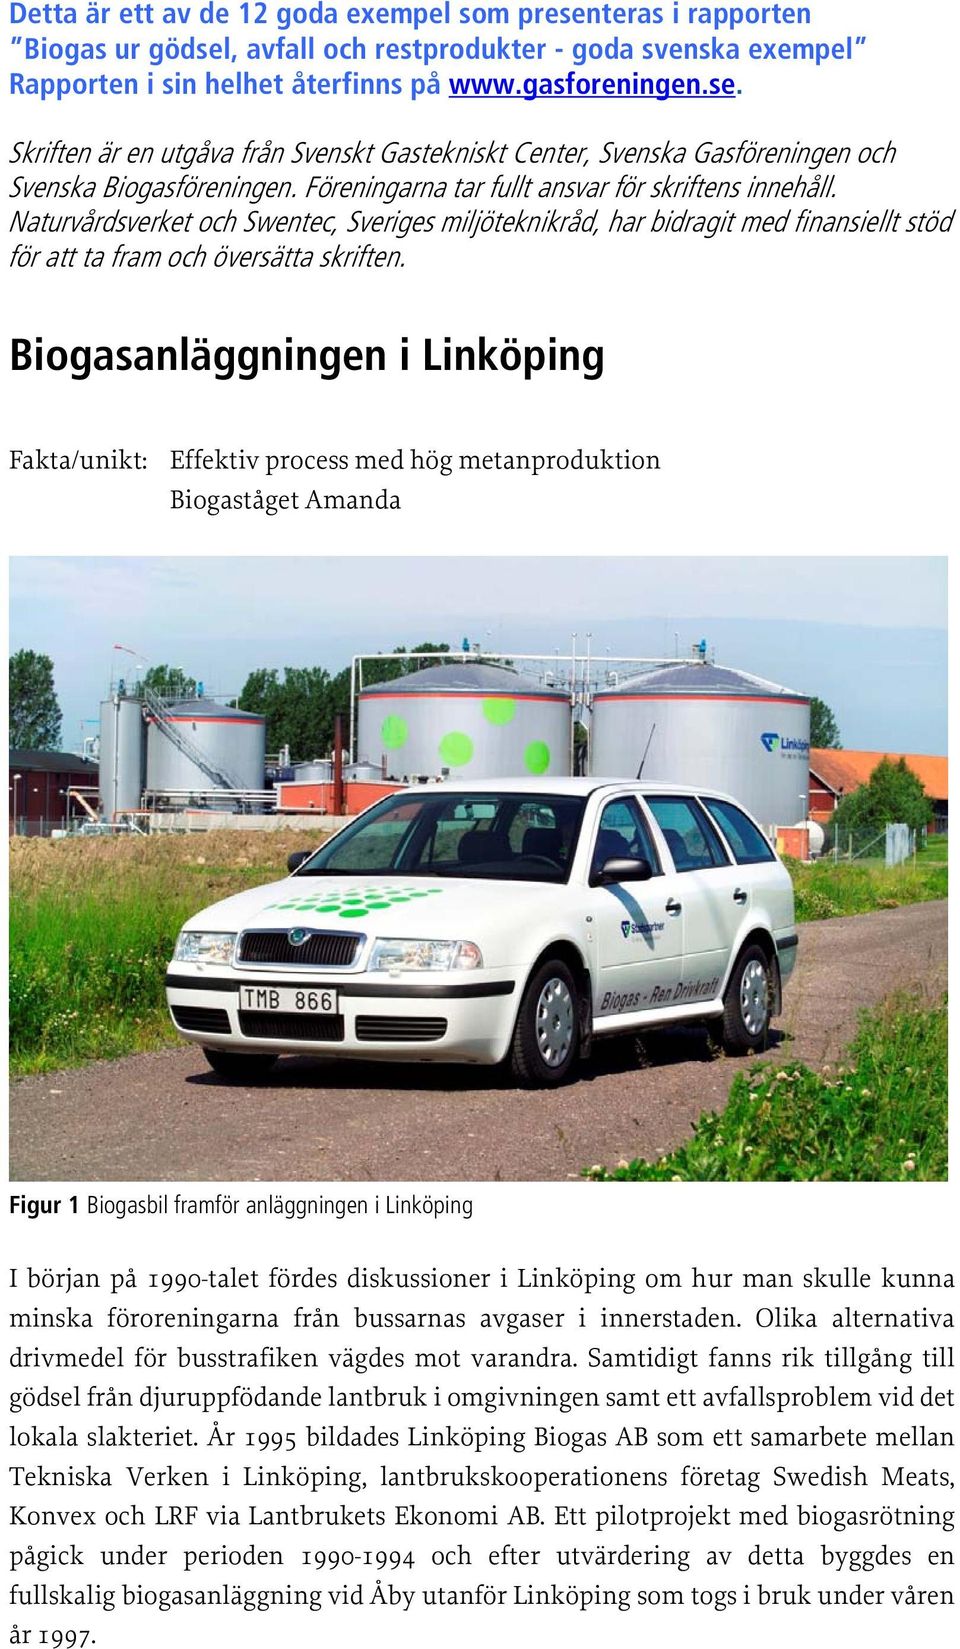 Biogasanläggningen i Linköping Fakta/unikt: Effektiv process med hög metanproduktion Biogaståget Amanda Figur 1 Biogasbil framför anläggningen i Linköping I början på 1990-talet fördes diskussioner i